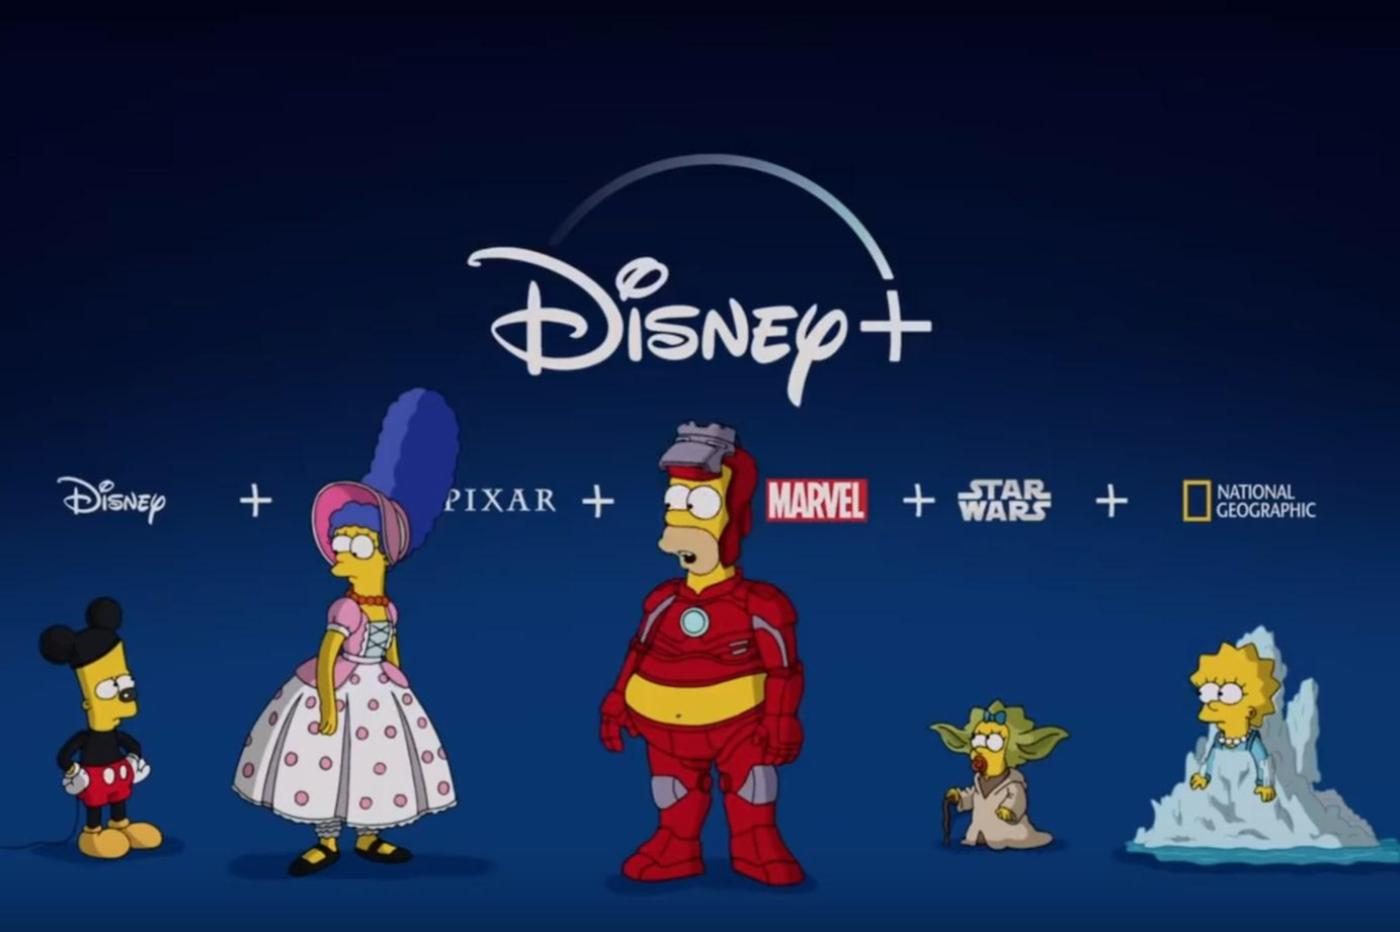 image promotionnelle les simpson pour Disney+ avec homer en iron man, marge en la bergère de toy story, maggie en yoda, lisa en elsa et bart en mickey